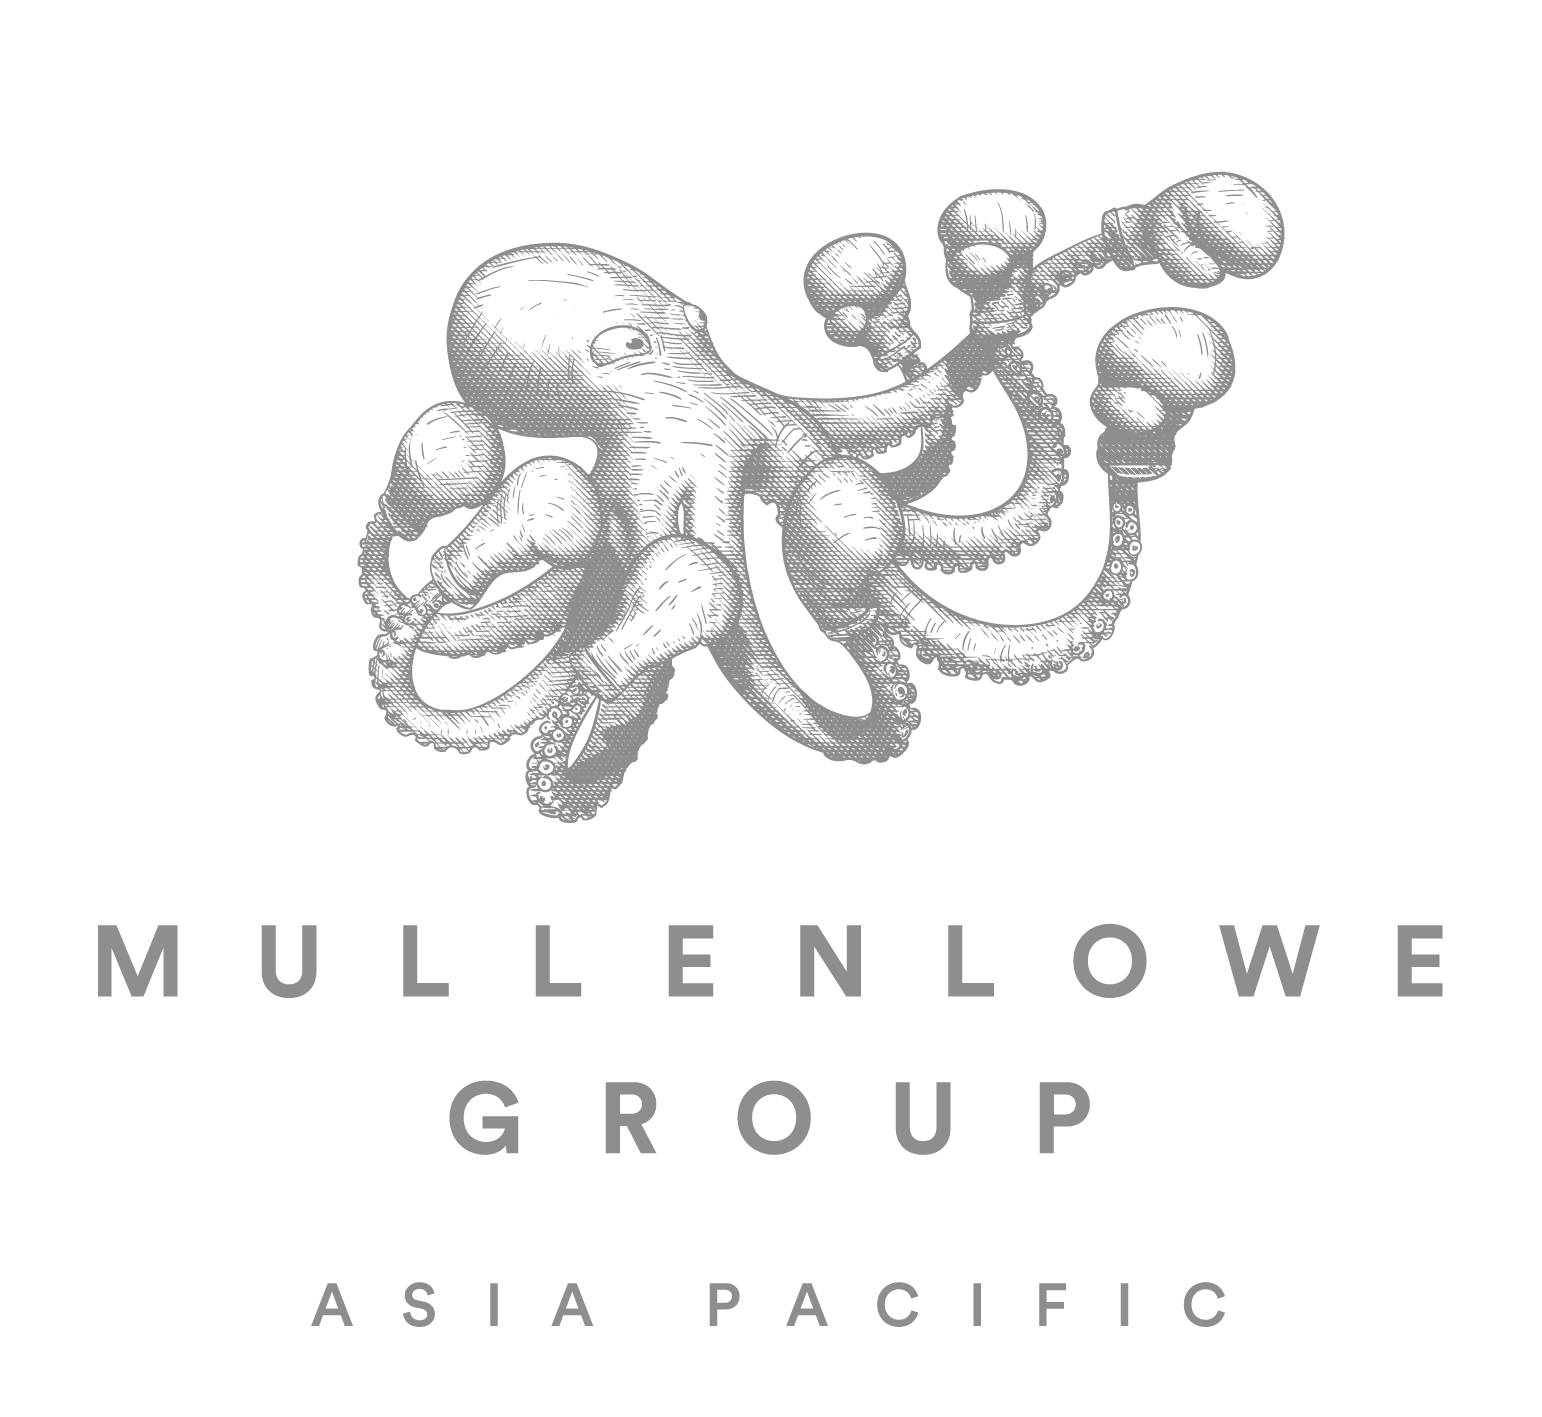 MullenLowe Asia Pacific